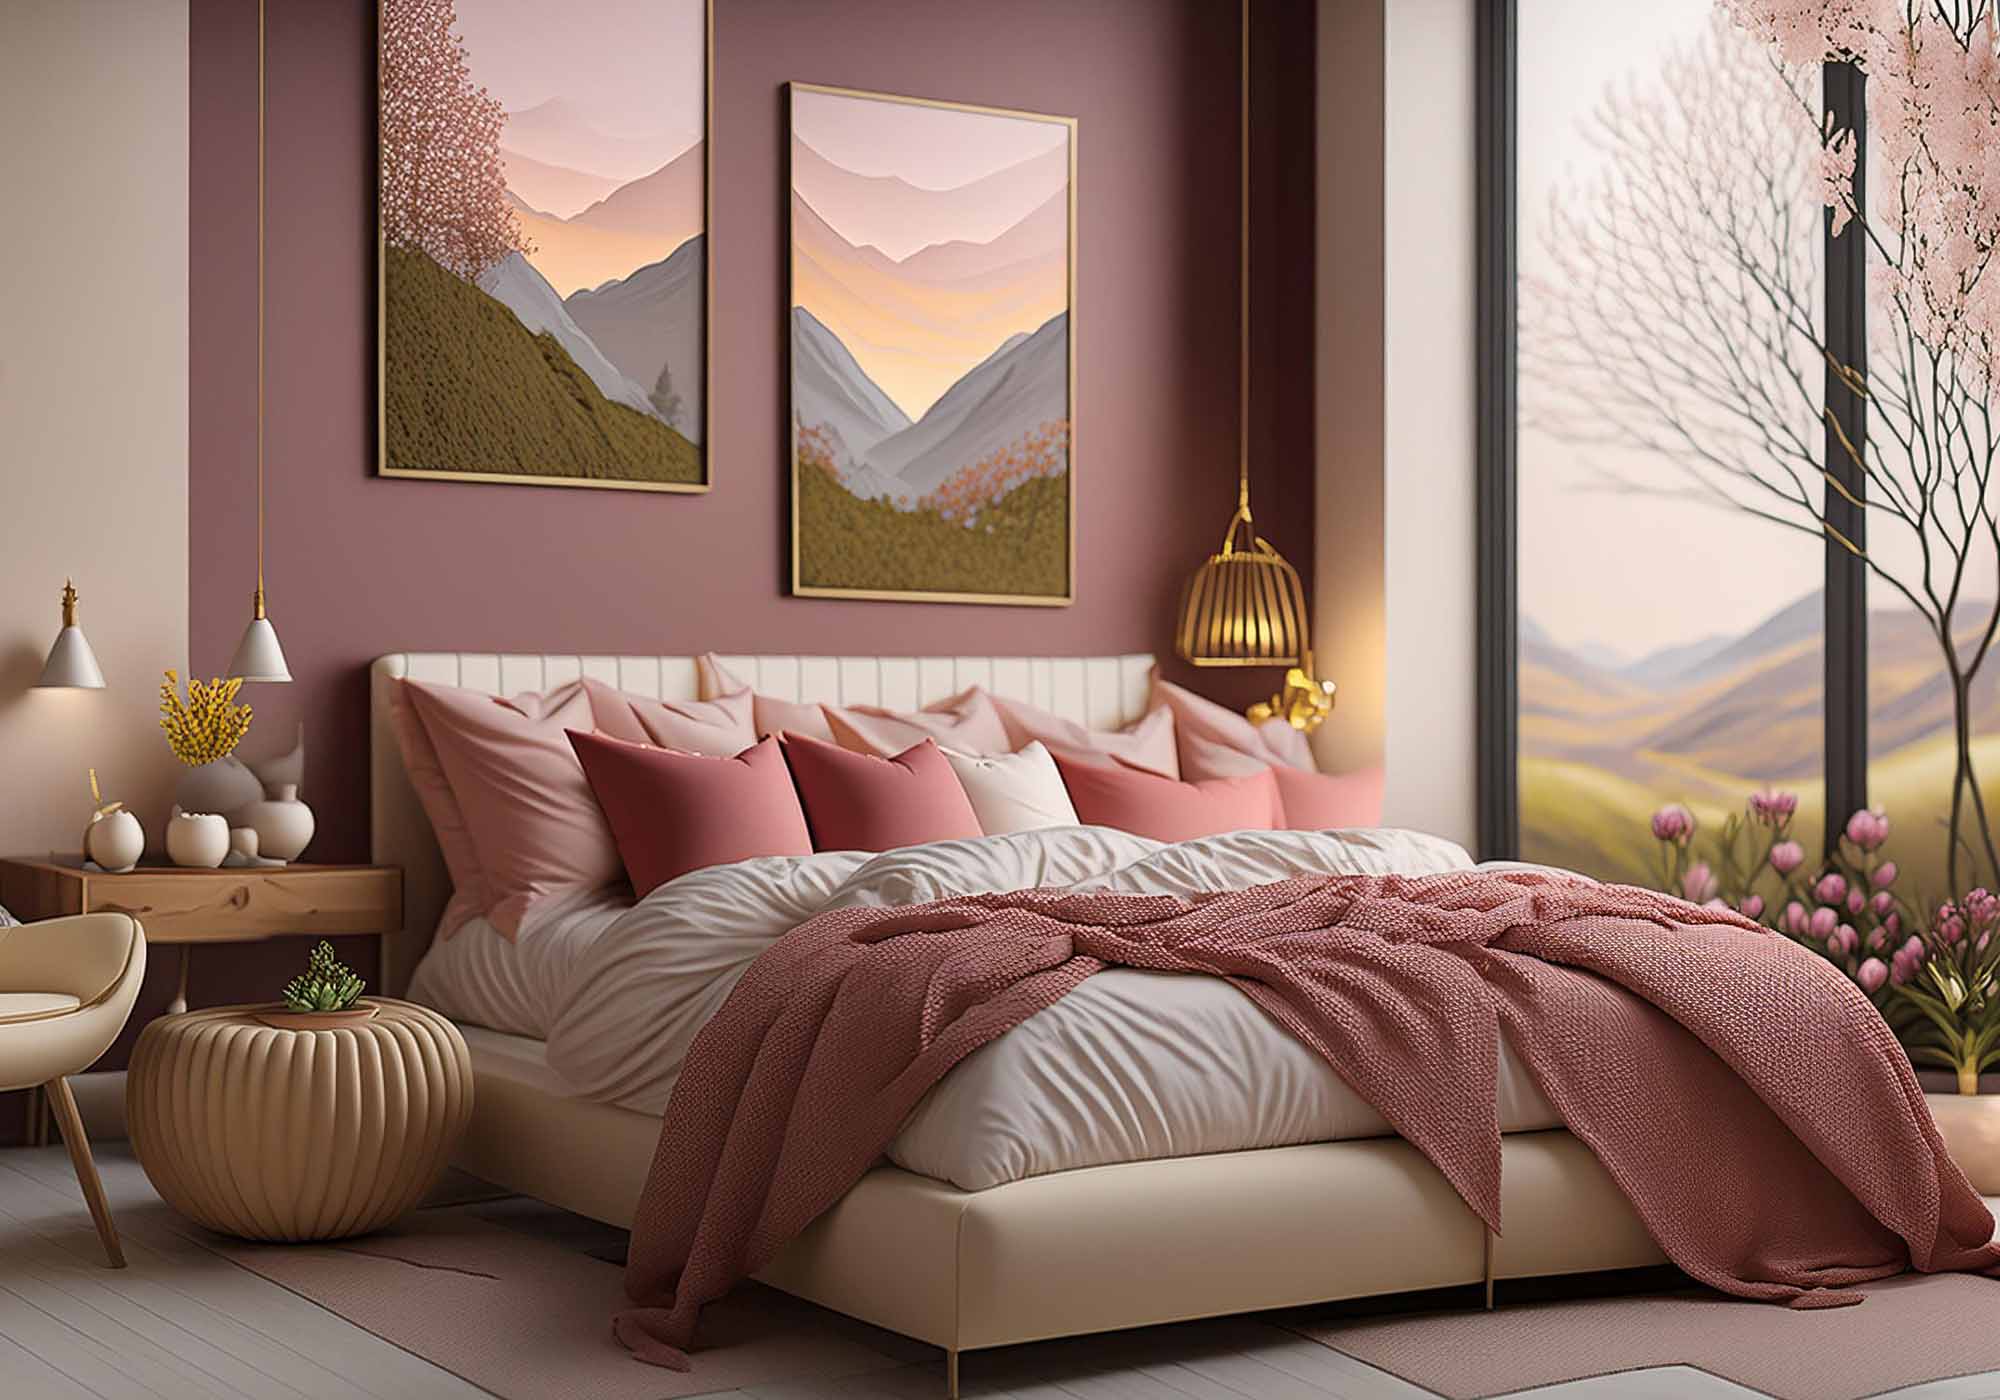 Elegante camera da letto di Beliamo con un letto matrimoniale moderno, biancheria di lusso e illuminazione accogliente, che esalta il comfort e lo stile del design italiano